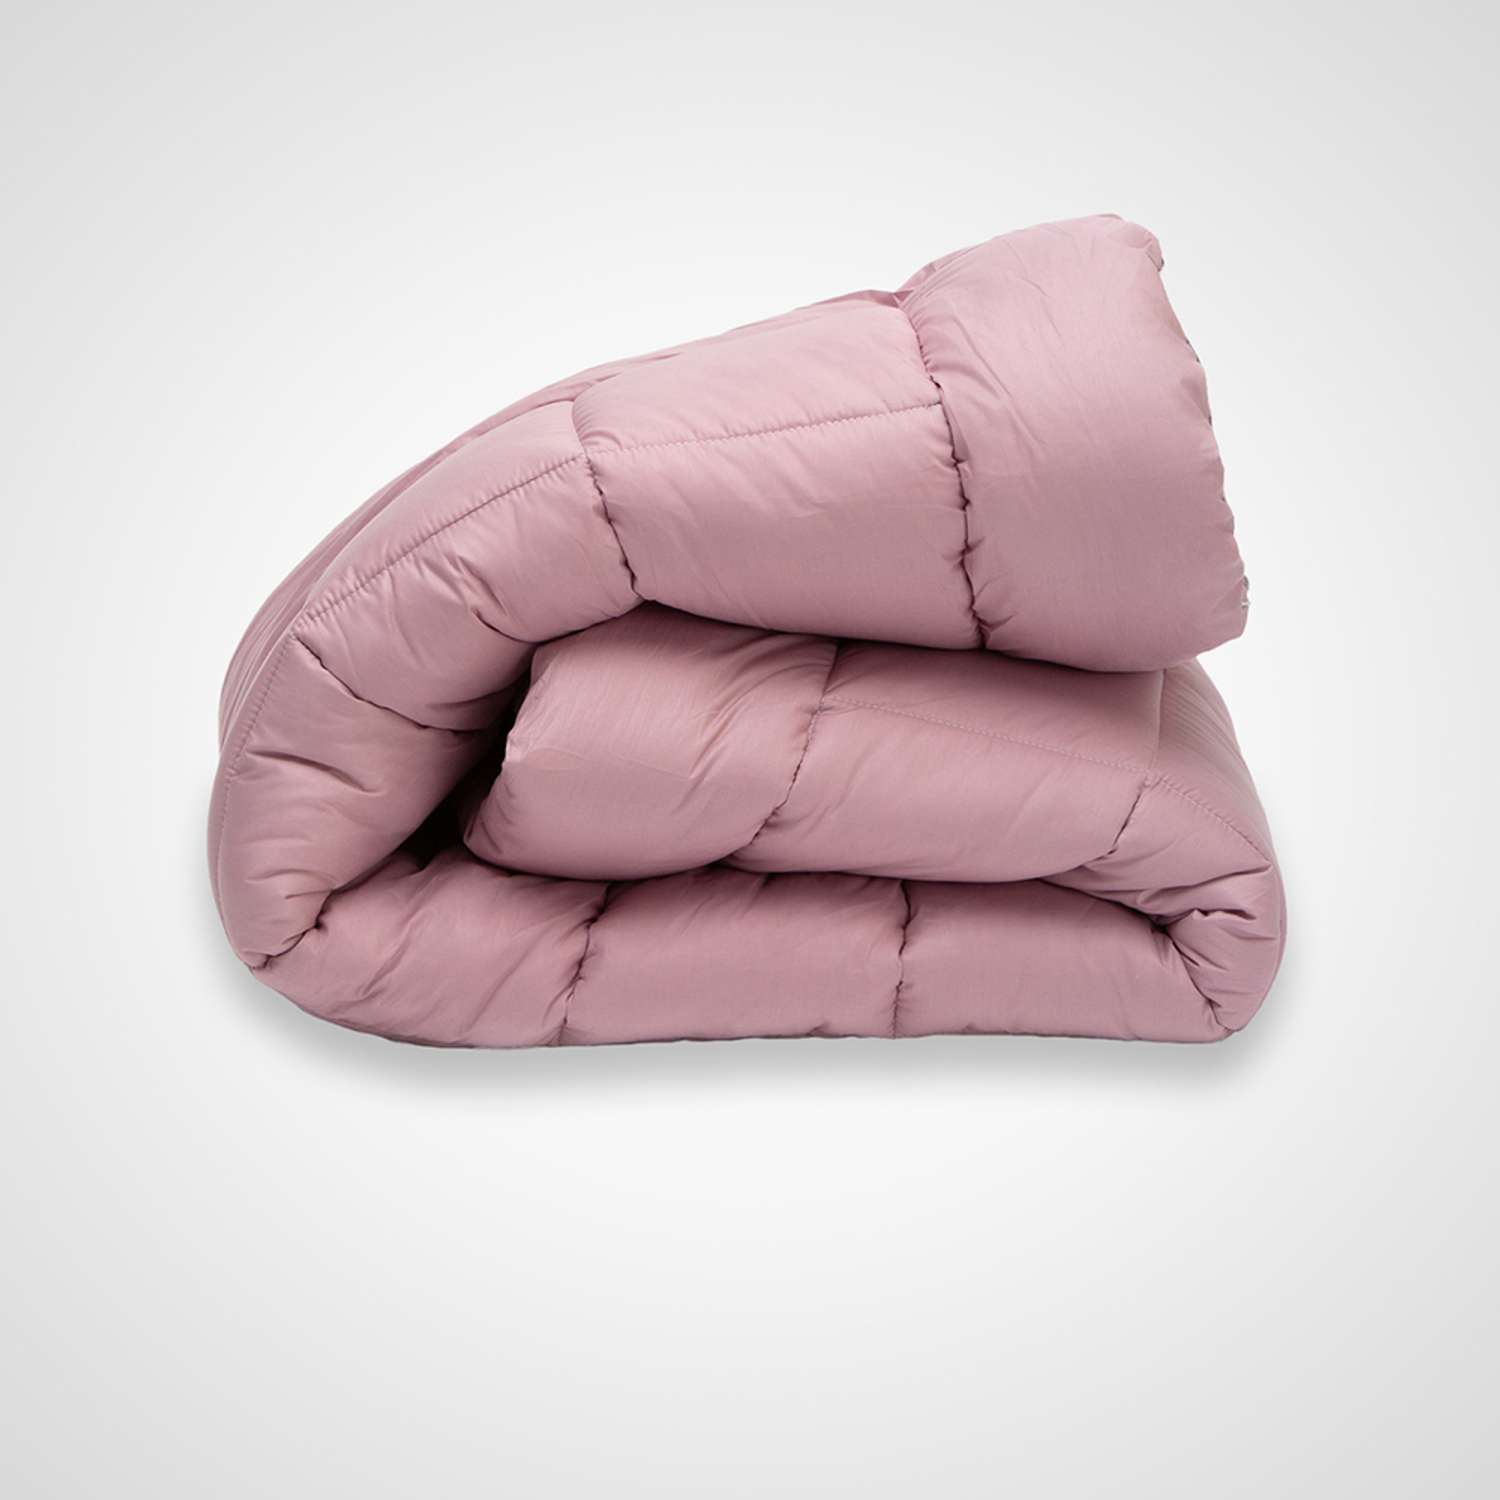 Одеяло SONNO ALCHIMIA 2-x спальный 170x205 всесезонное с наполнителем Amicor розовый - фото 3